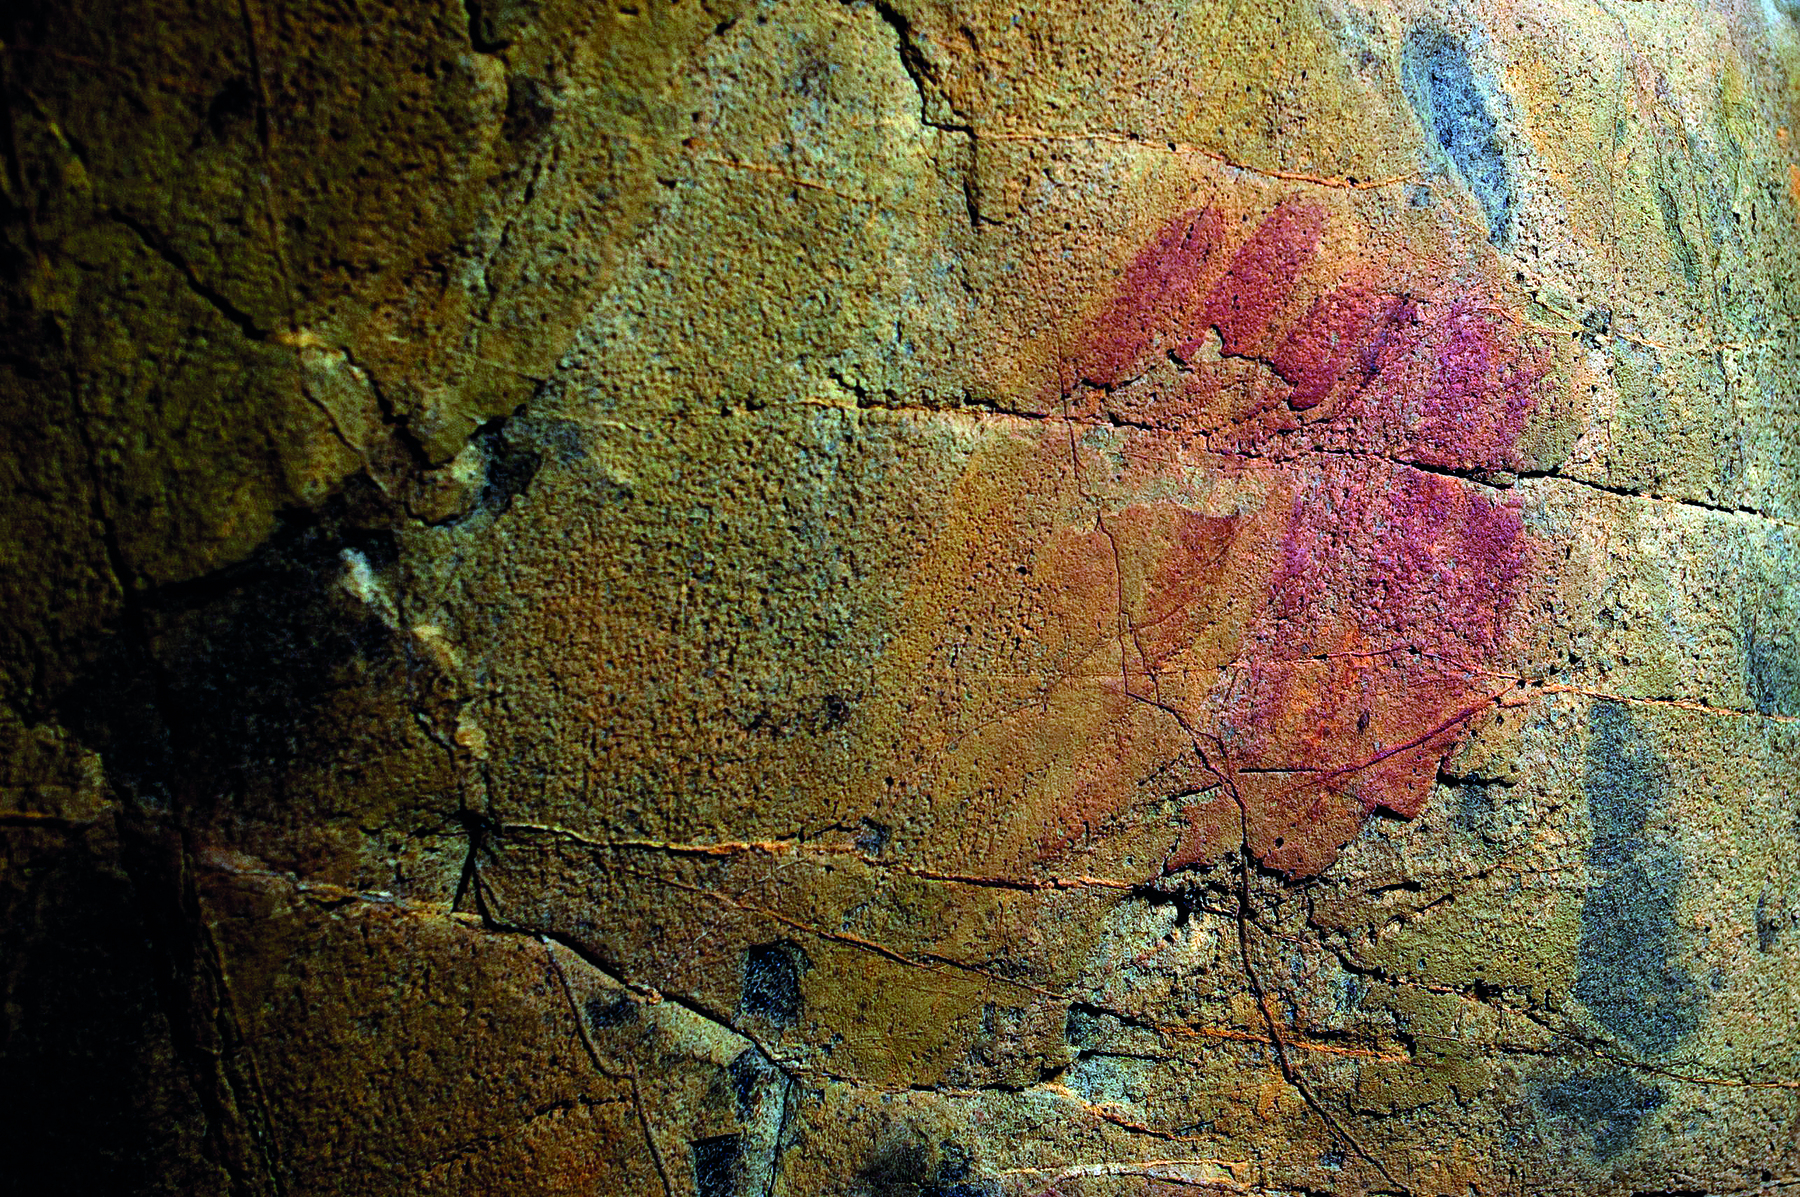 Fotografia. Em uma parede rochosa com algumas ranhuras, manchas avermelhadas e manchas azuladas.